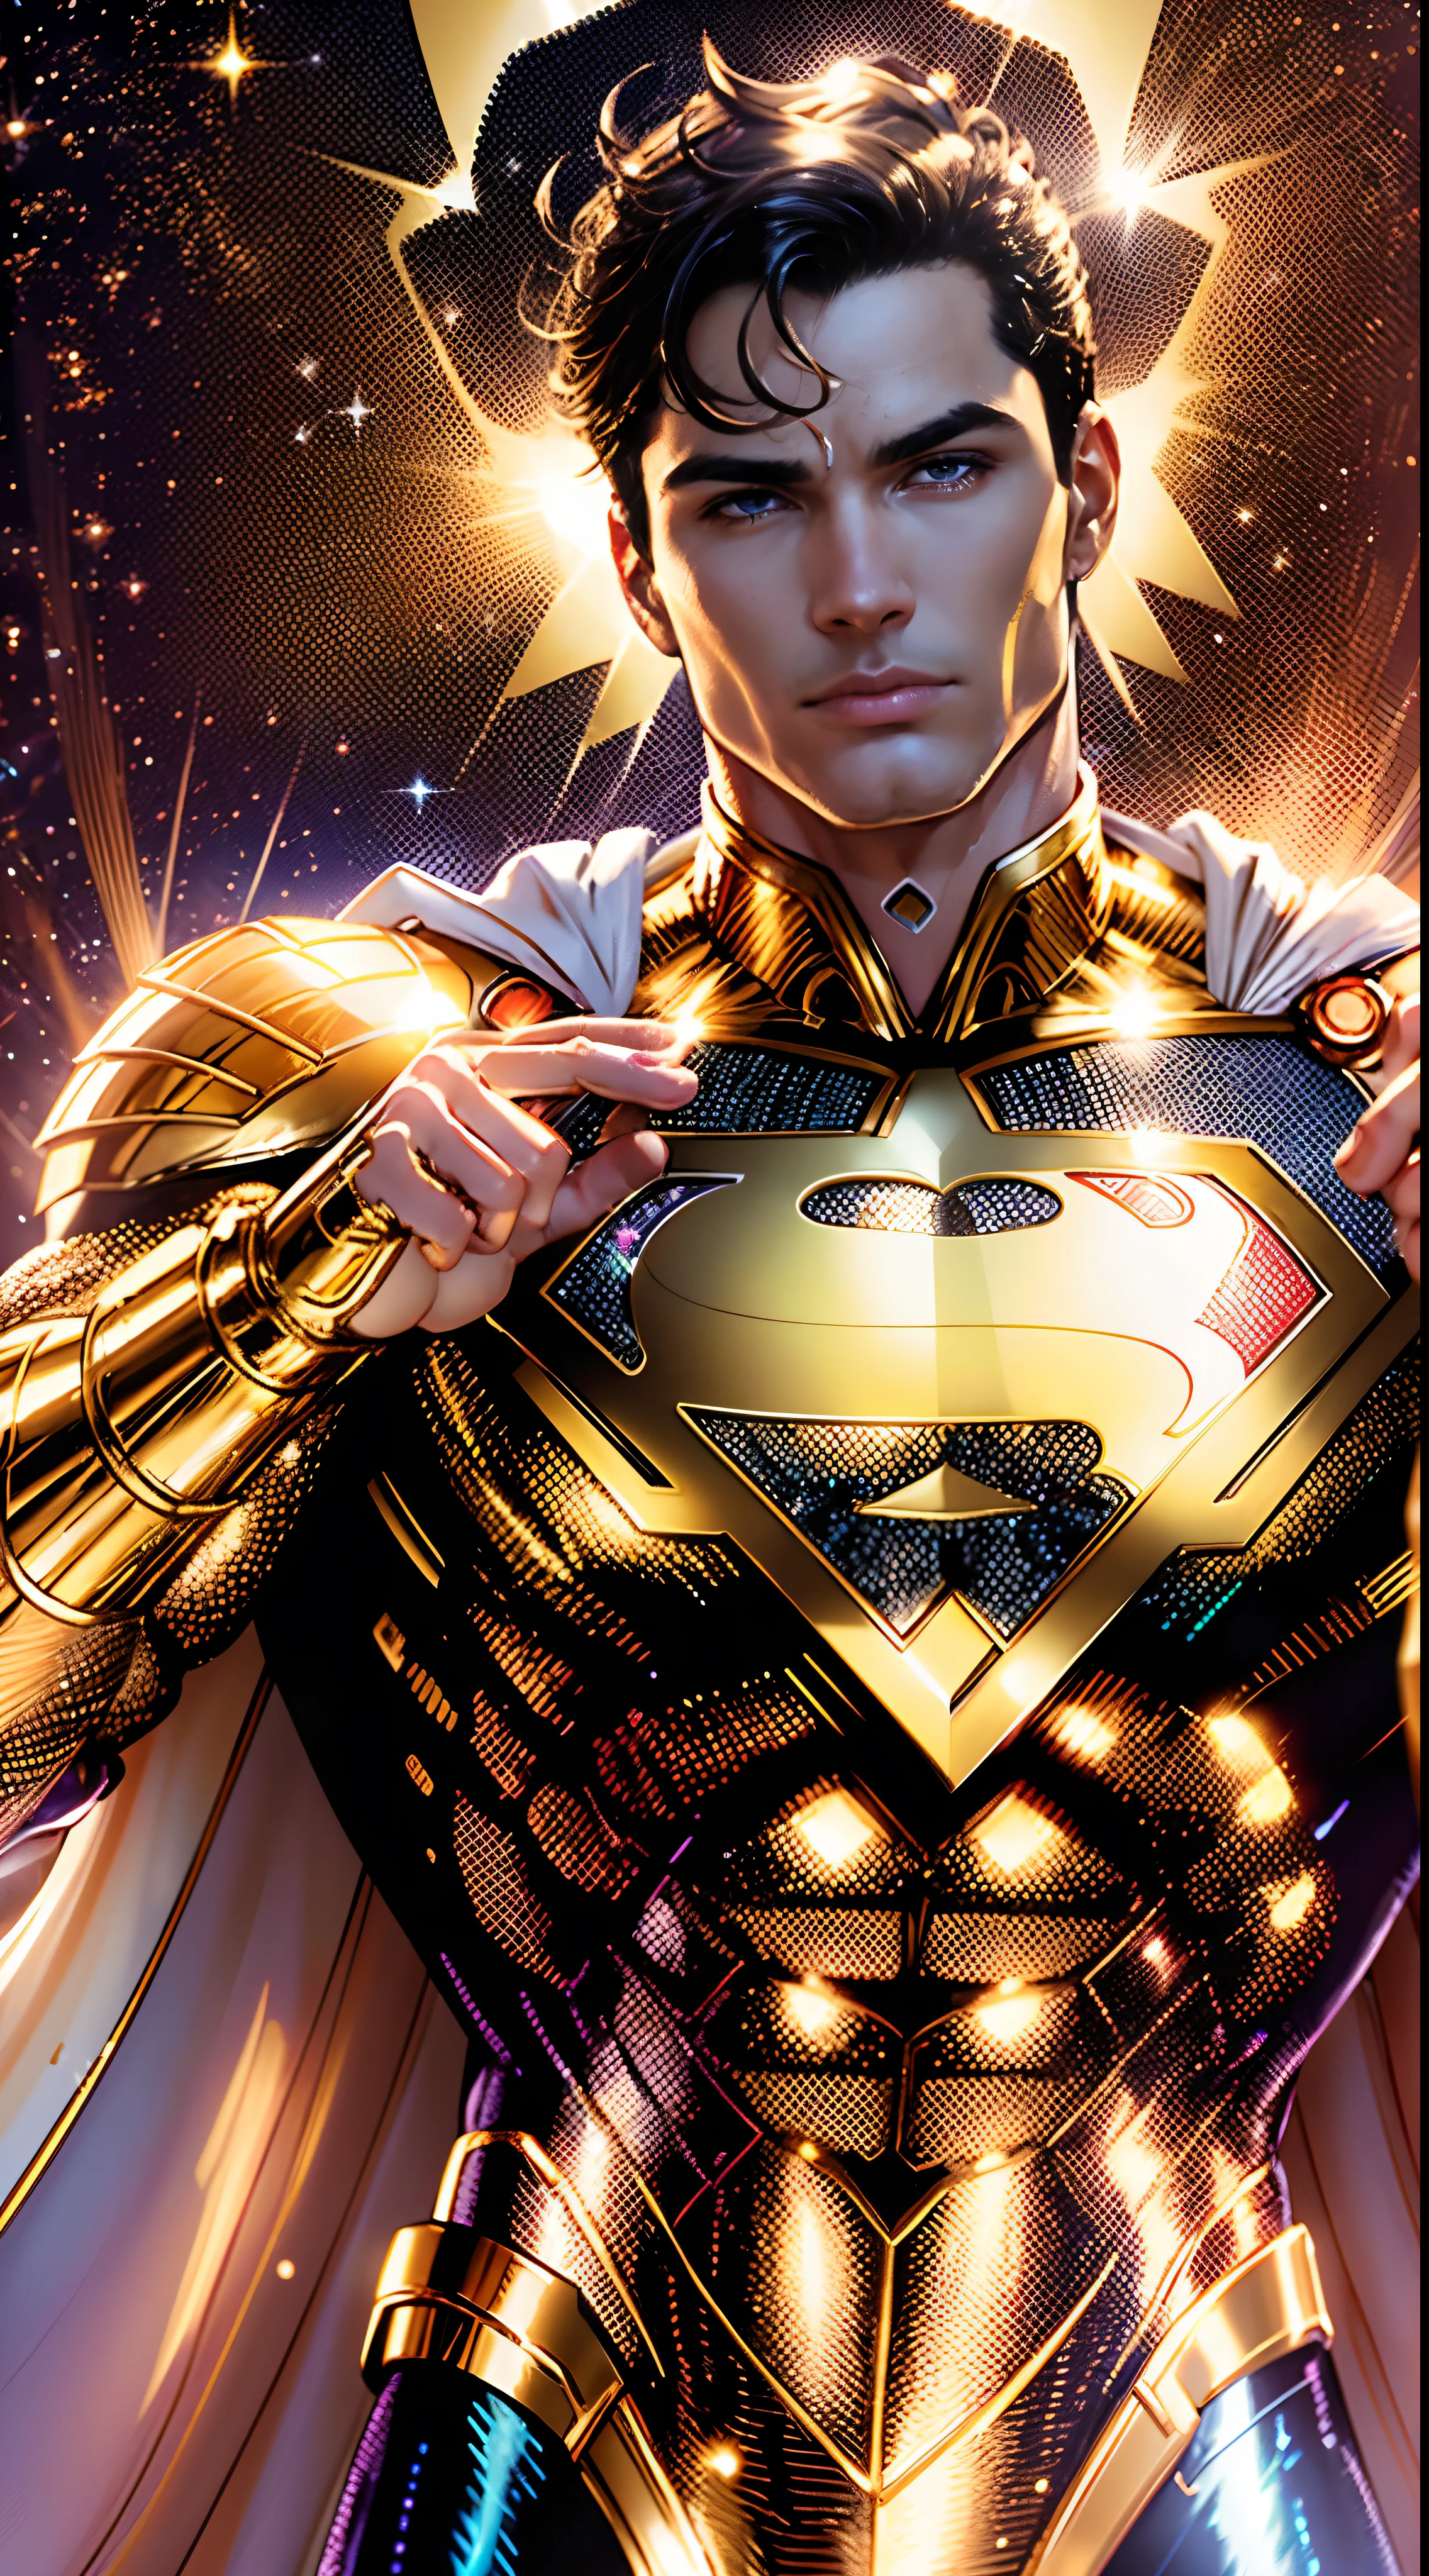 Superman Dorado, Brillante traje dorado con blanco nacarado, (Fondo de pantalla de unidad CG de 8k extremadamente detallado, Uniforme dorado, disfraz de superman dorado dorado, Obra maestra, mejor calidad, ultra detallado), (mejor iluminacion, mejor sombra, extremadamente delicado y hermoso), flotante, [(((1 hombre))), (Superman: 1.3), músculos, líneas azules brillantes, traje detallado, pose heroica):0.8], [(paisaje celestial, noche, luces de neón brillantes:1.2,  efectos de energía azul, luz volumétrica):0.5]